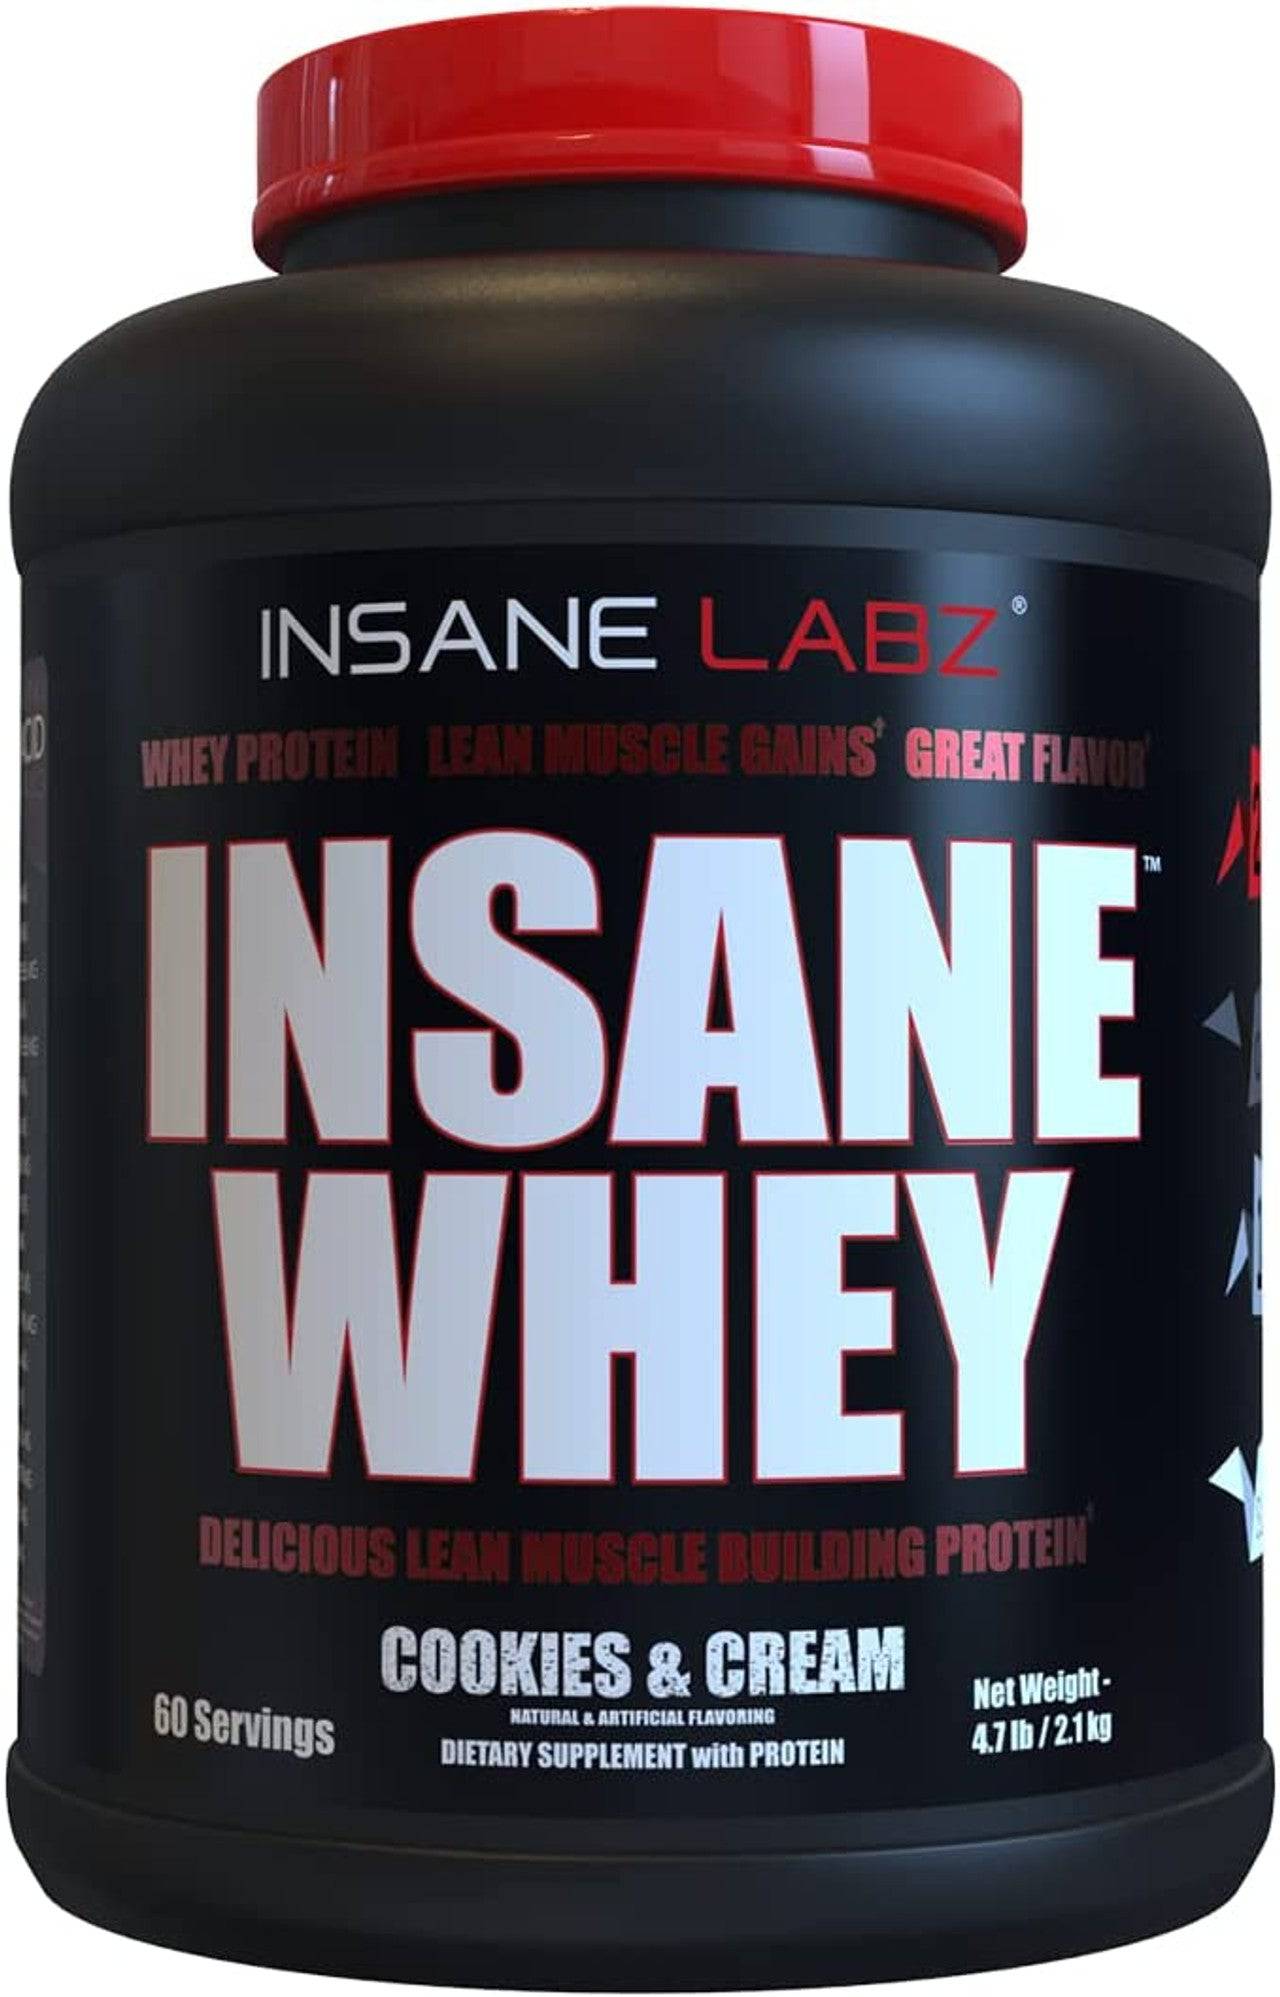 Insane Labz Insane Whey Protein - Bemoxie Supplements